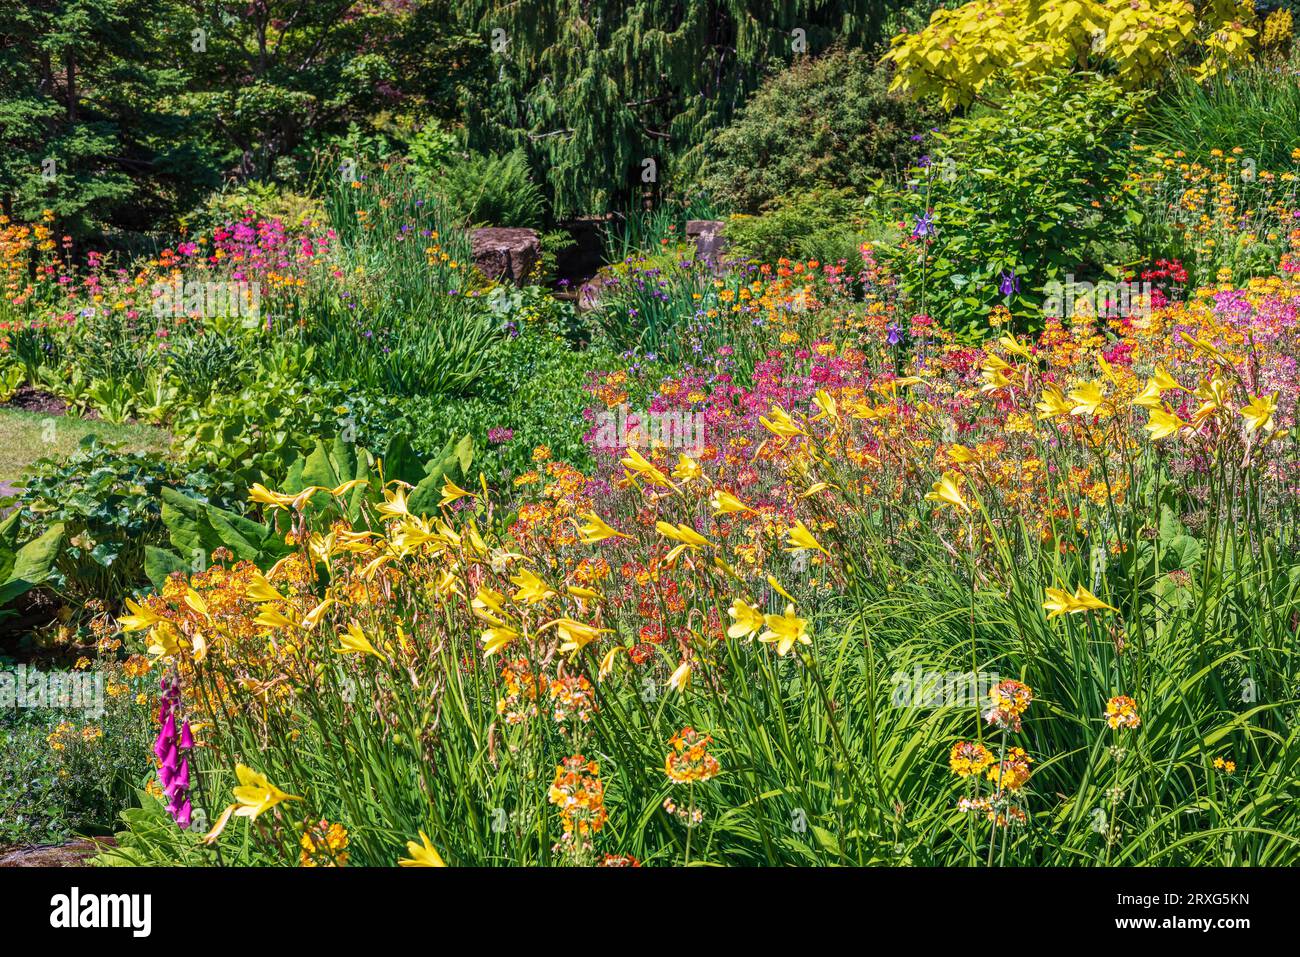 Bordure herbacée bien garnie avec des fleurs roses, bleues et jaunes. Banque D'Images